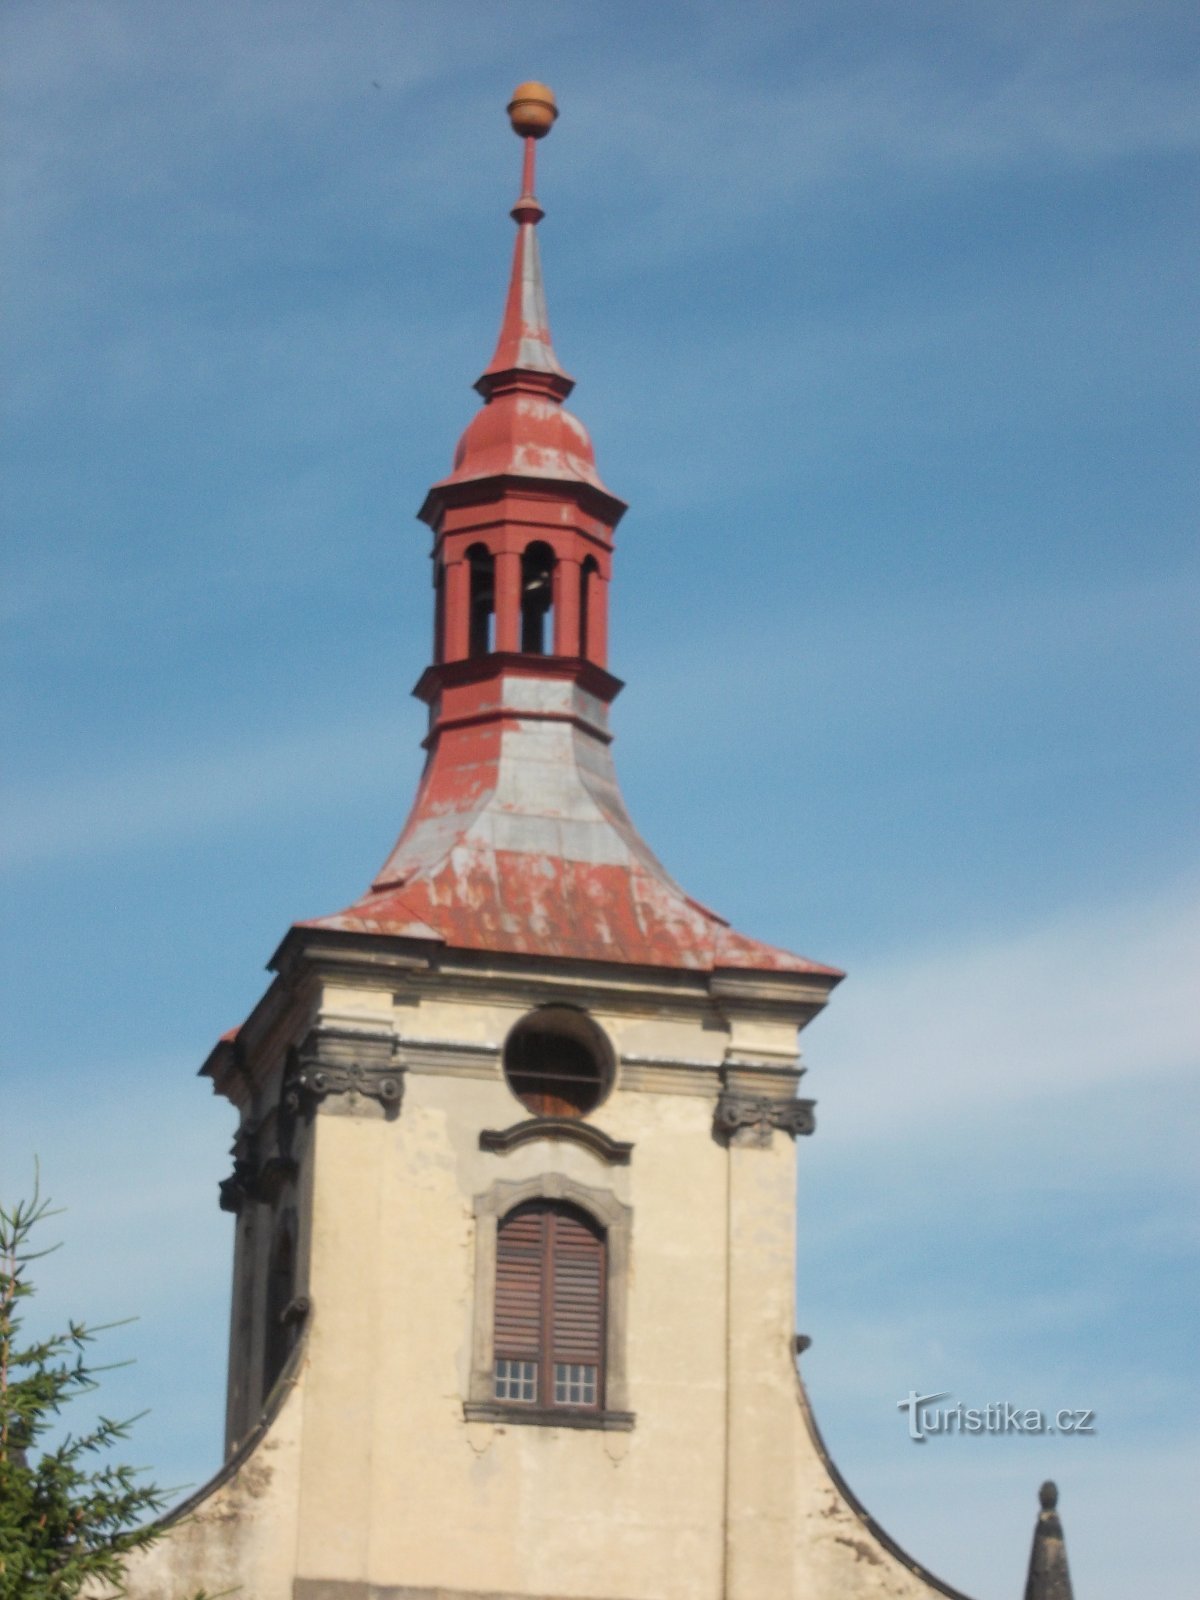 ouverture du clocher de l'église pour l'horloge